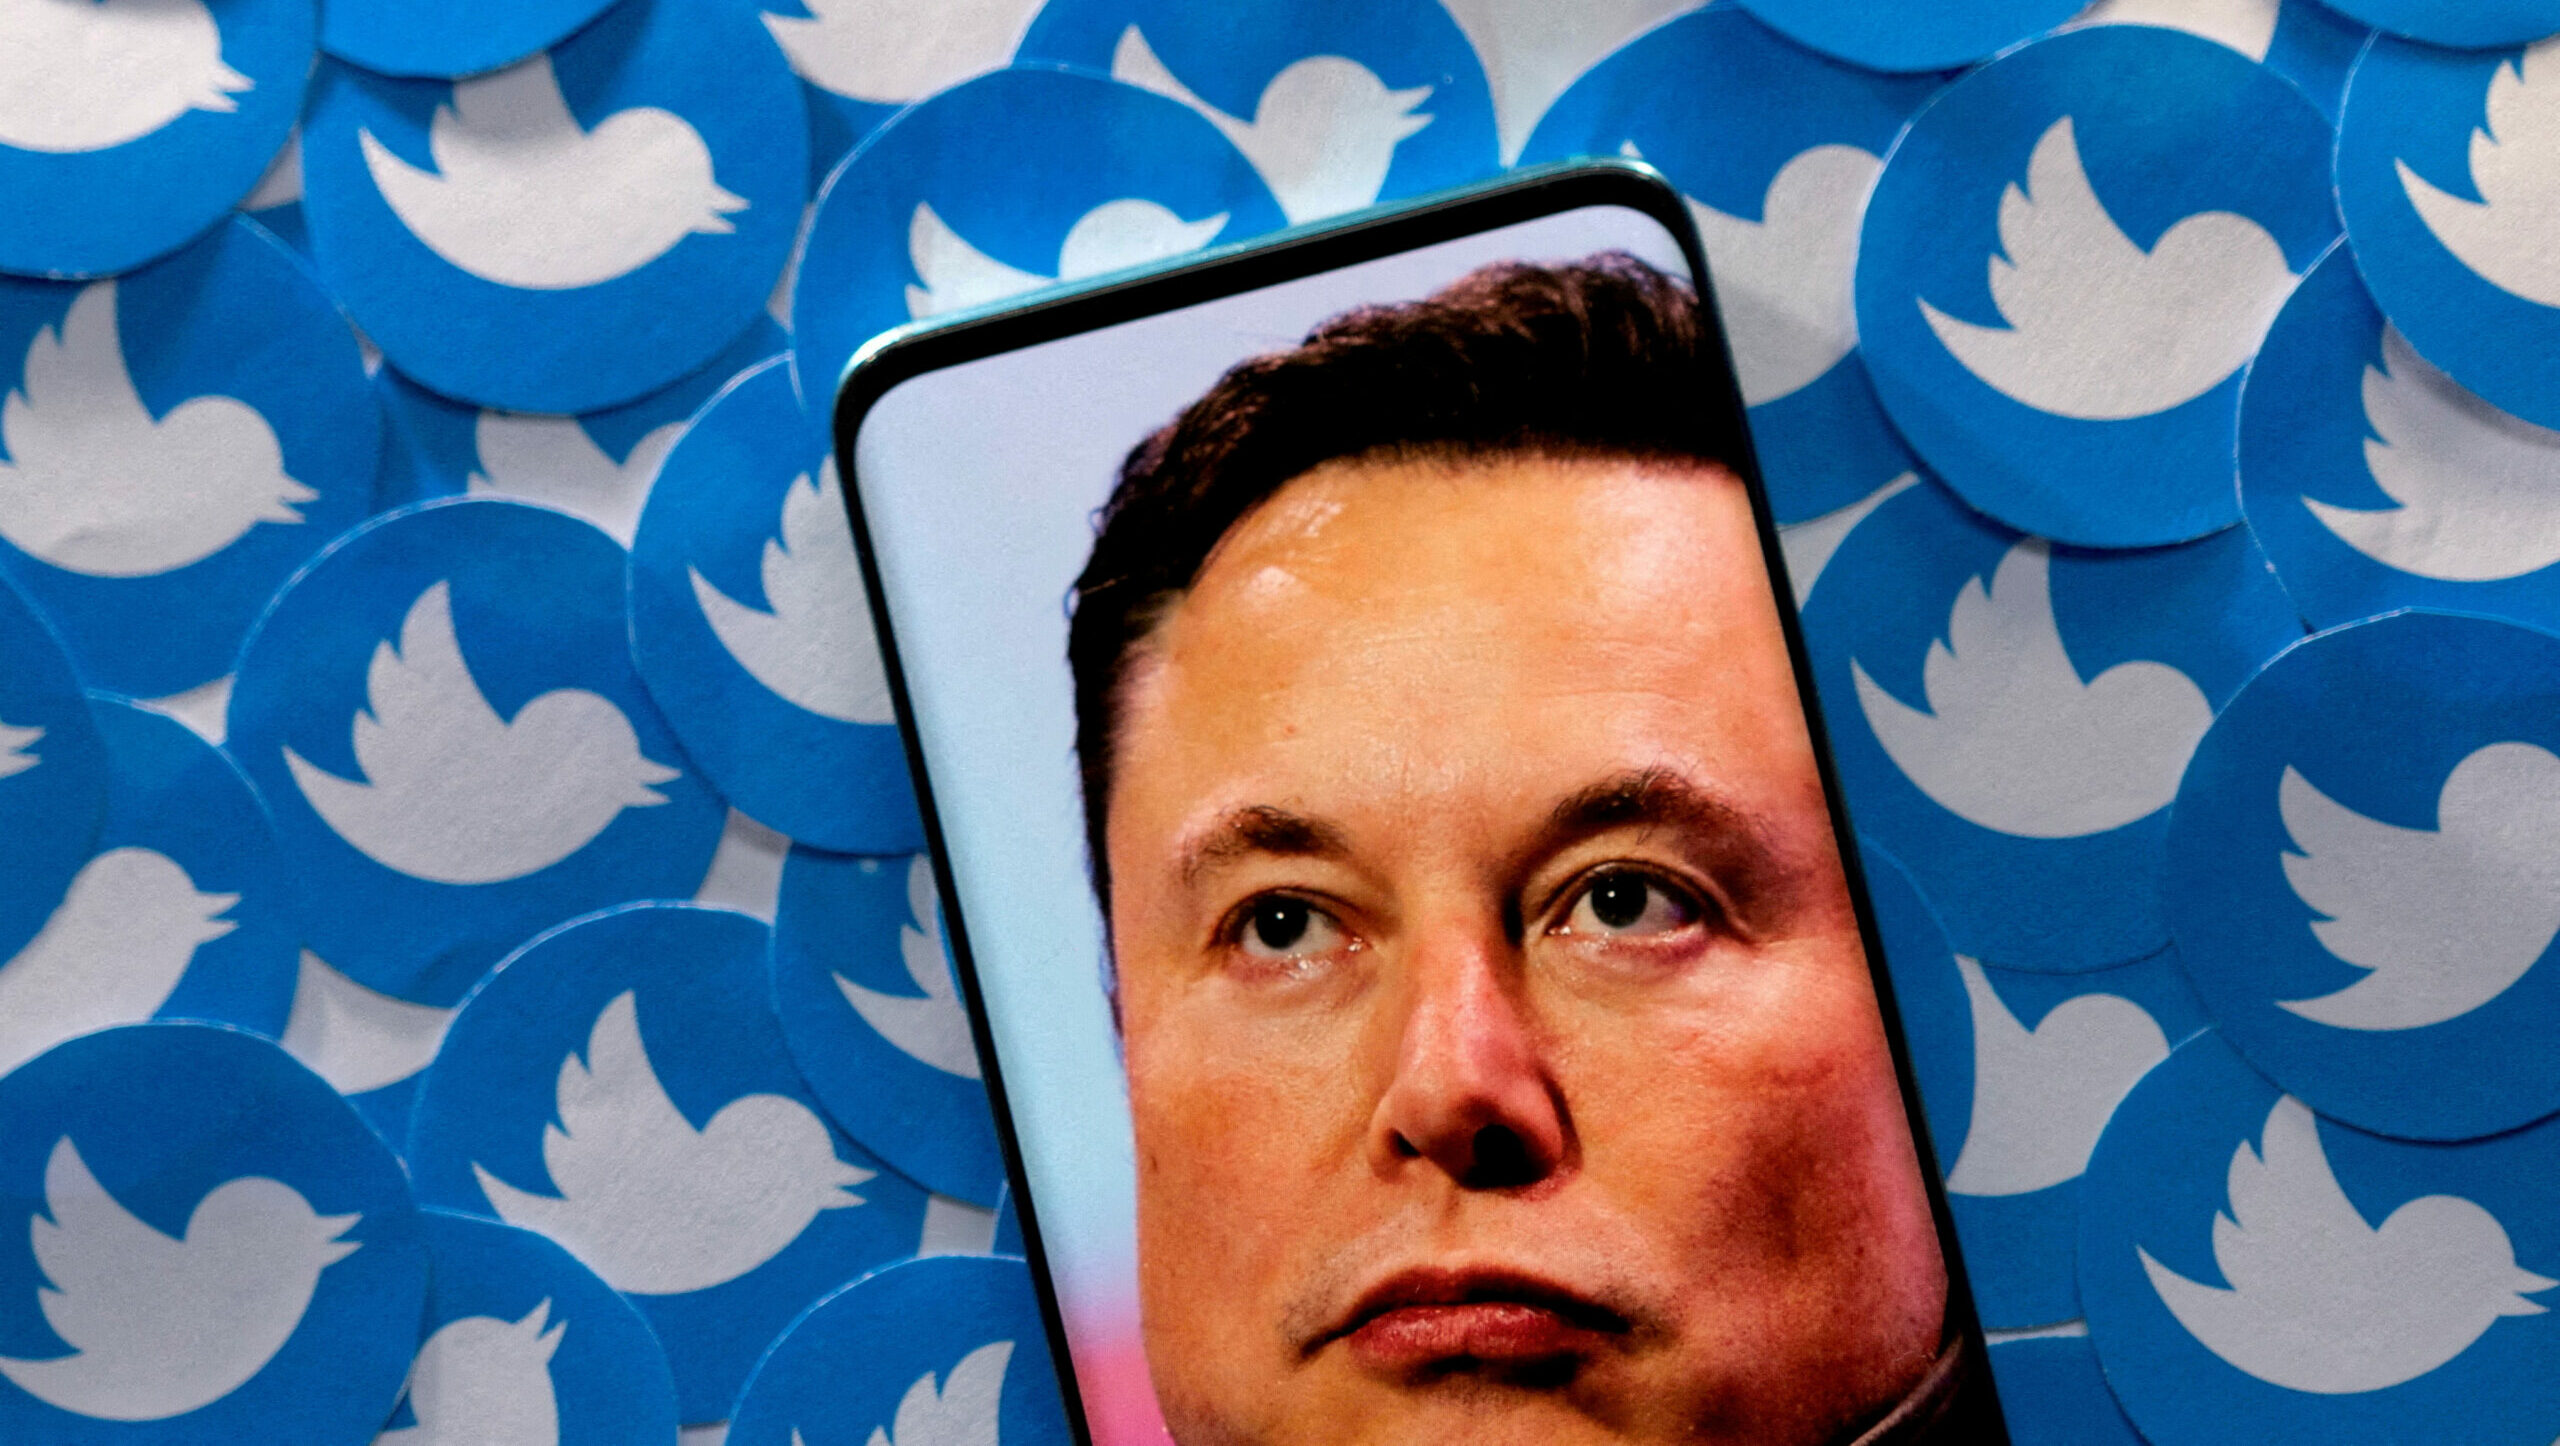 Ilustrasi gambar Elon Musk terlihat di smartphone yang ditempatkan pada cetakan logo Twitter. Foto: Reuters